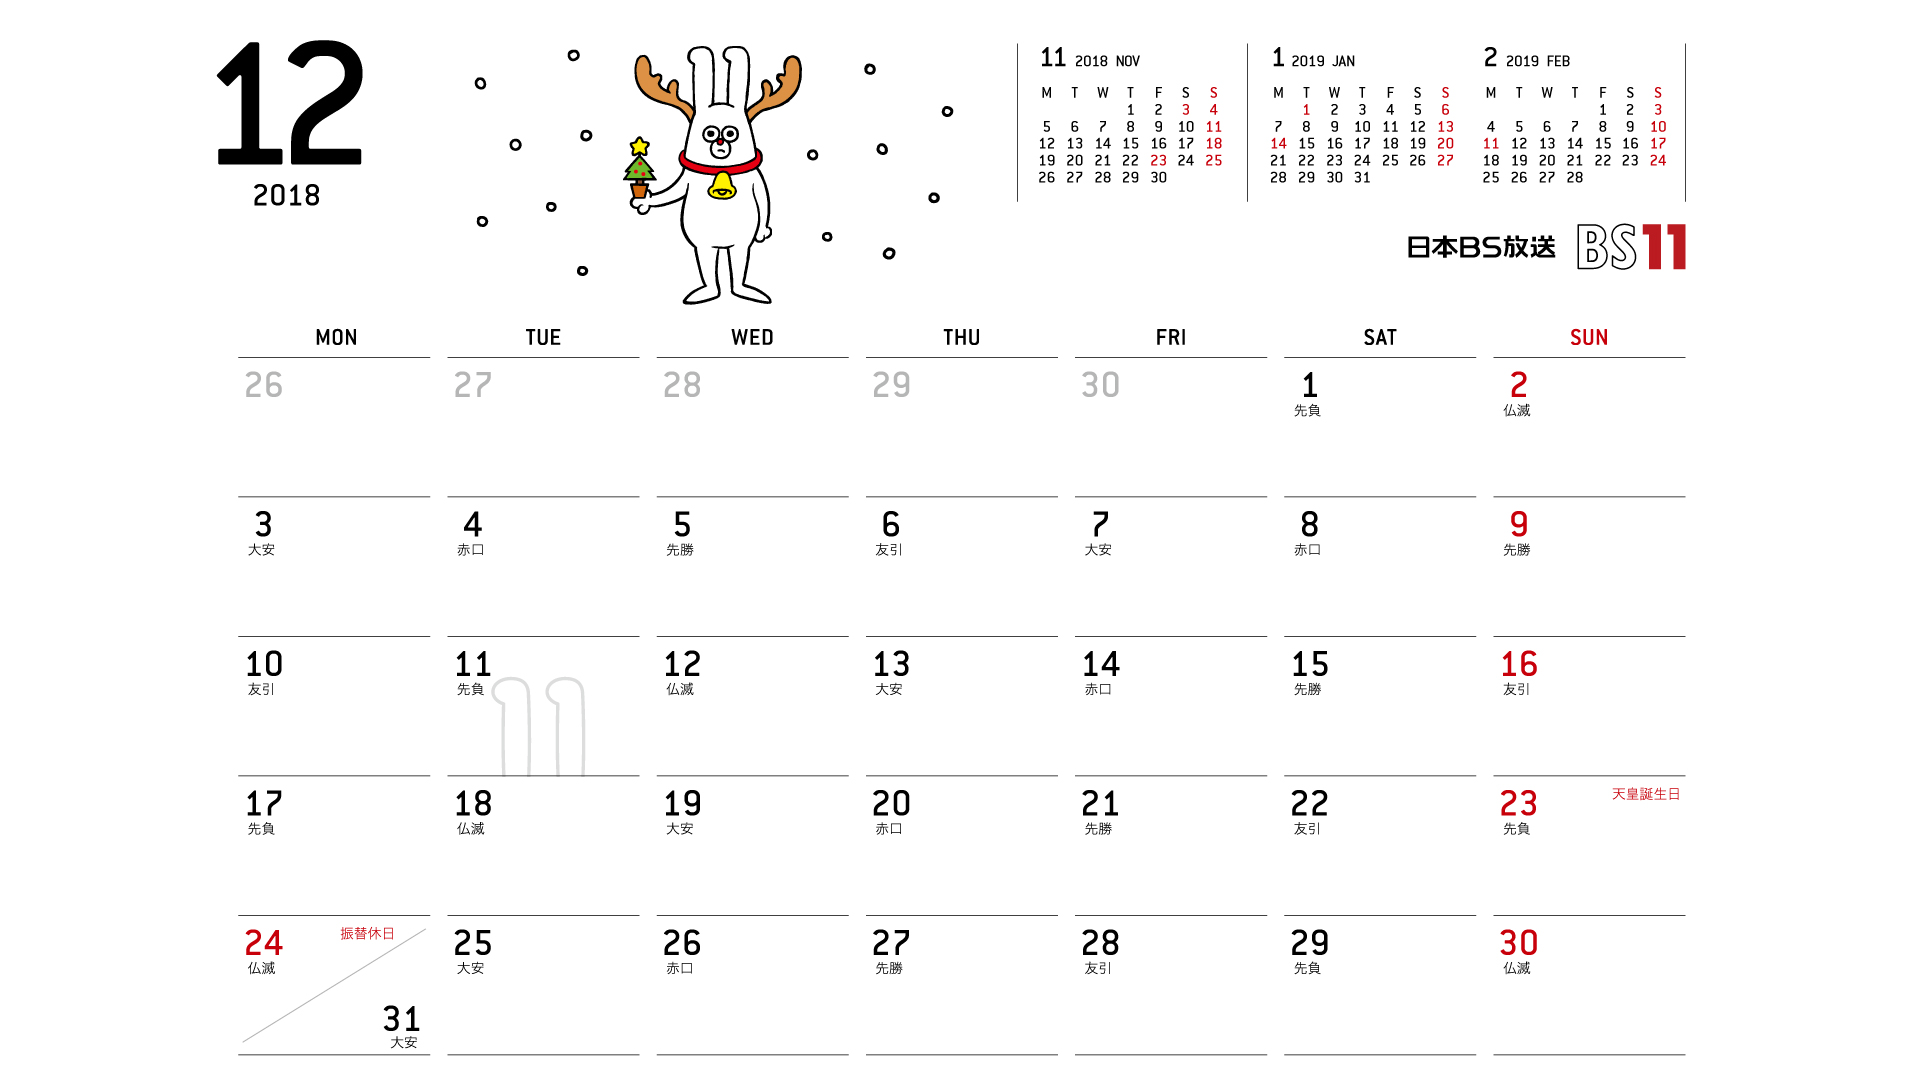 じゅういっちゃんのデジタルカレンダー18年12月 Bs11 イレブン いつでも無料放送